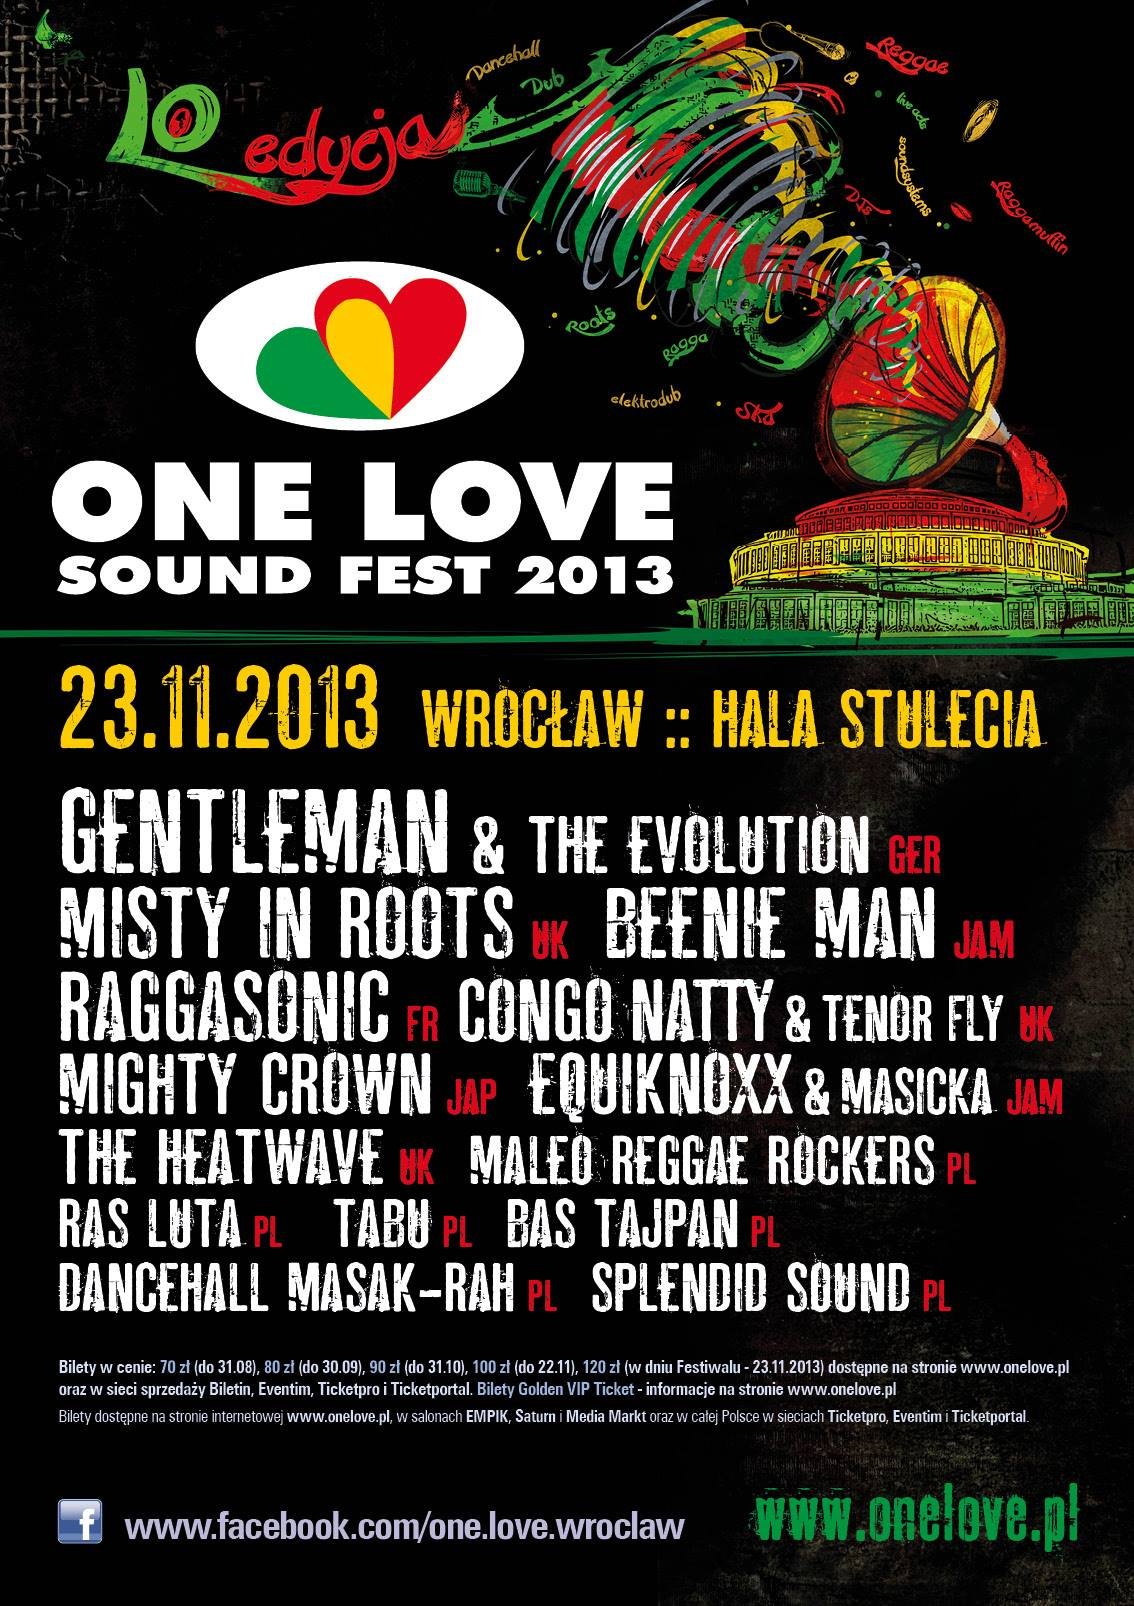 One Love Sound Fest 2013 w Hala Stulecia (Wrocław) w dniu 23 Lis 2013 |  Last.fm